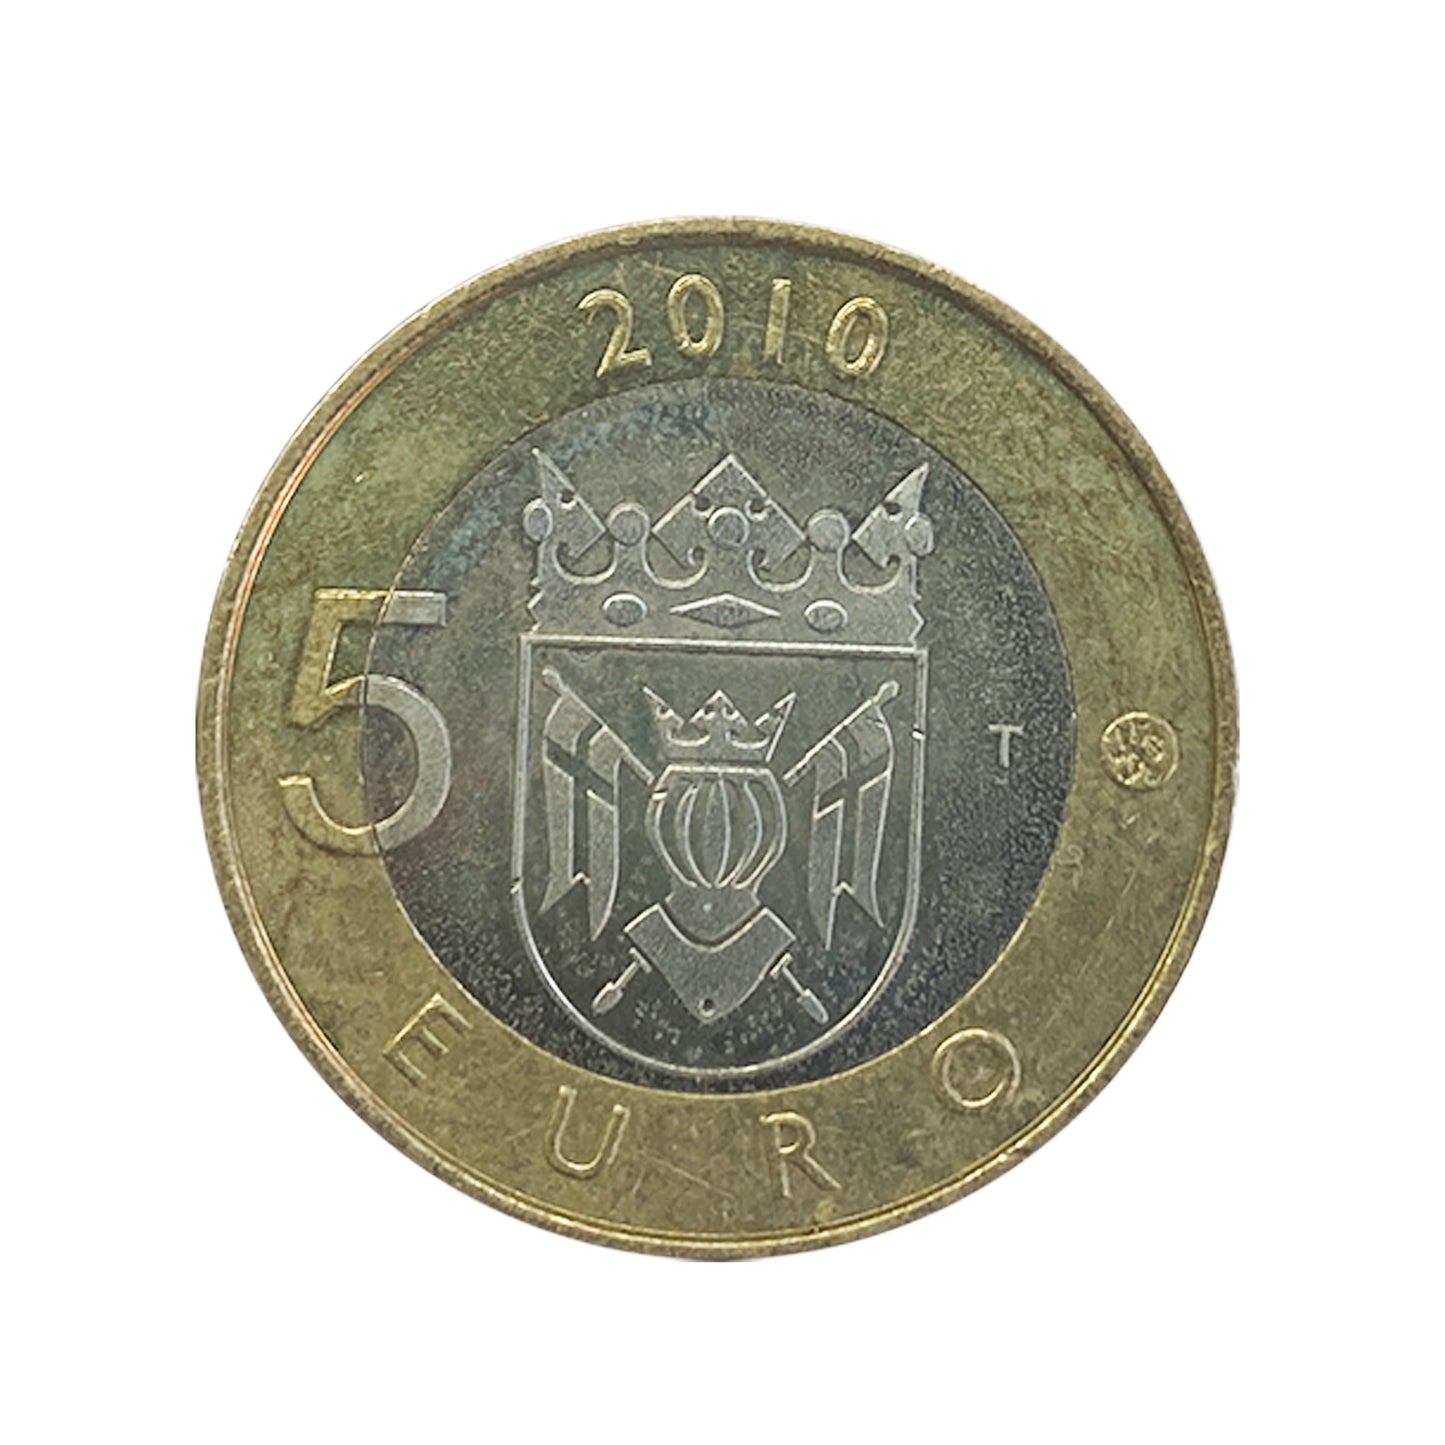 Finlandia - Moneda 5 euros en cuproníquel 2010 - Finlandia Propia